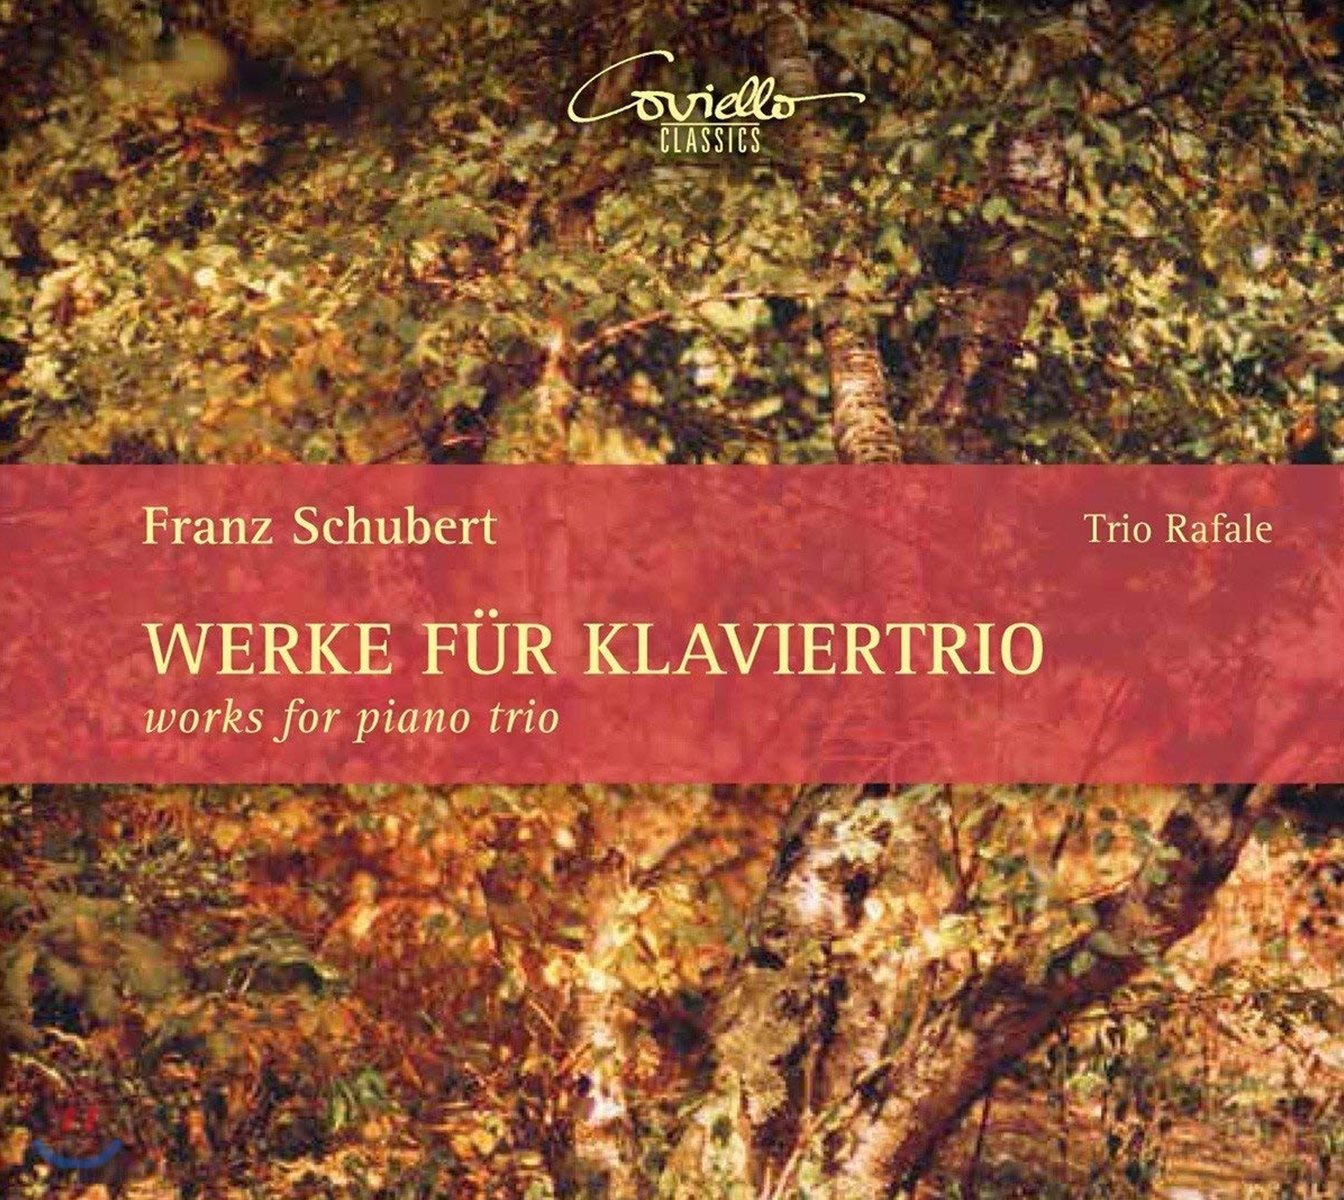 Trio Rafale 슈베르트: 피아노 트리오 전집 - 1번 D898, 2번 D929, &#39;노투르노&#39;, &#39;소나텐자츠&#39; - 트리오 라팔레 (Schubert: Works for Piano Trio) 